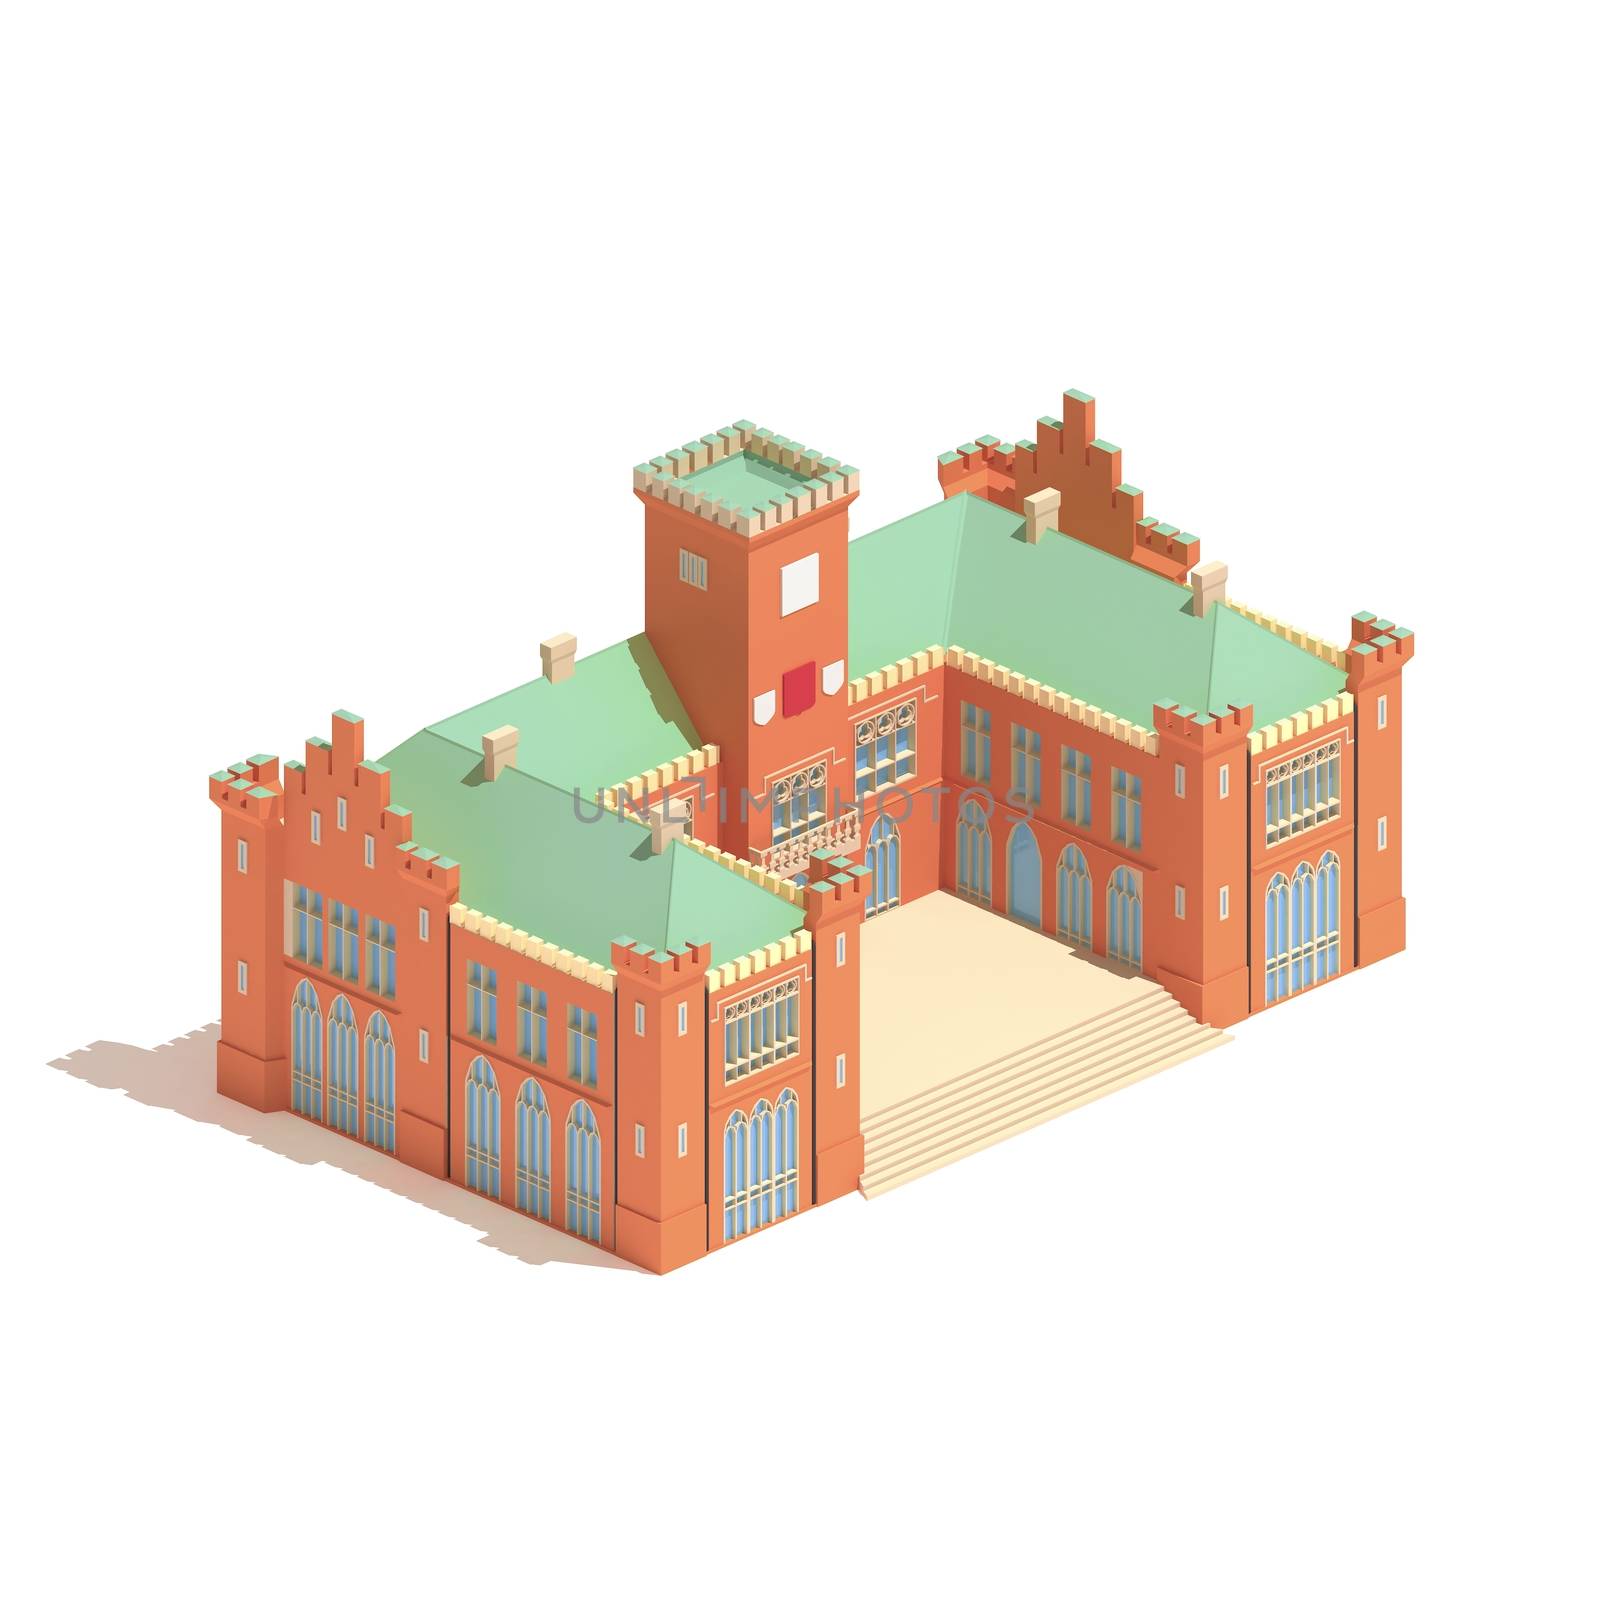 Flat 3d model isometric castle or university building  illustration isolated on white background. by ingalinder